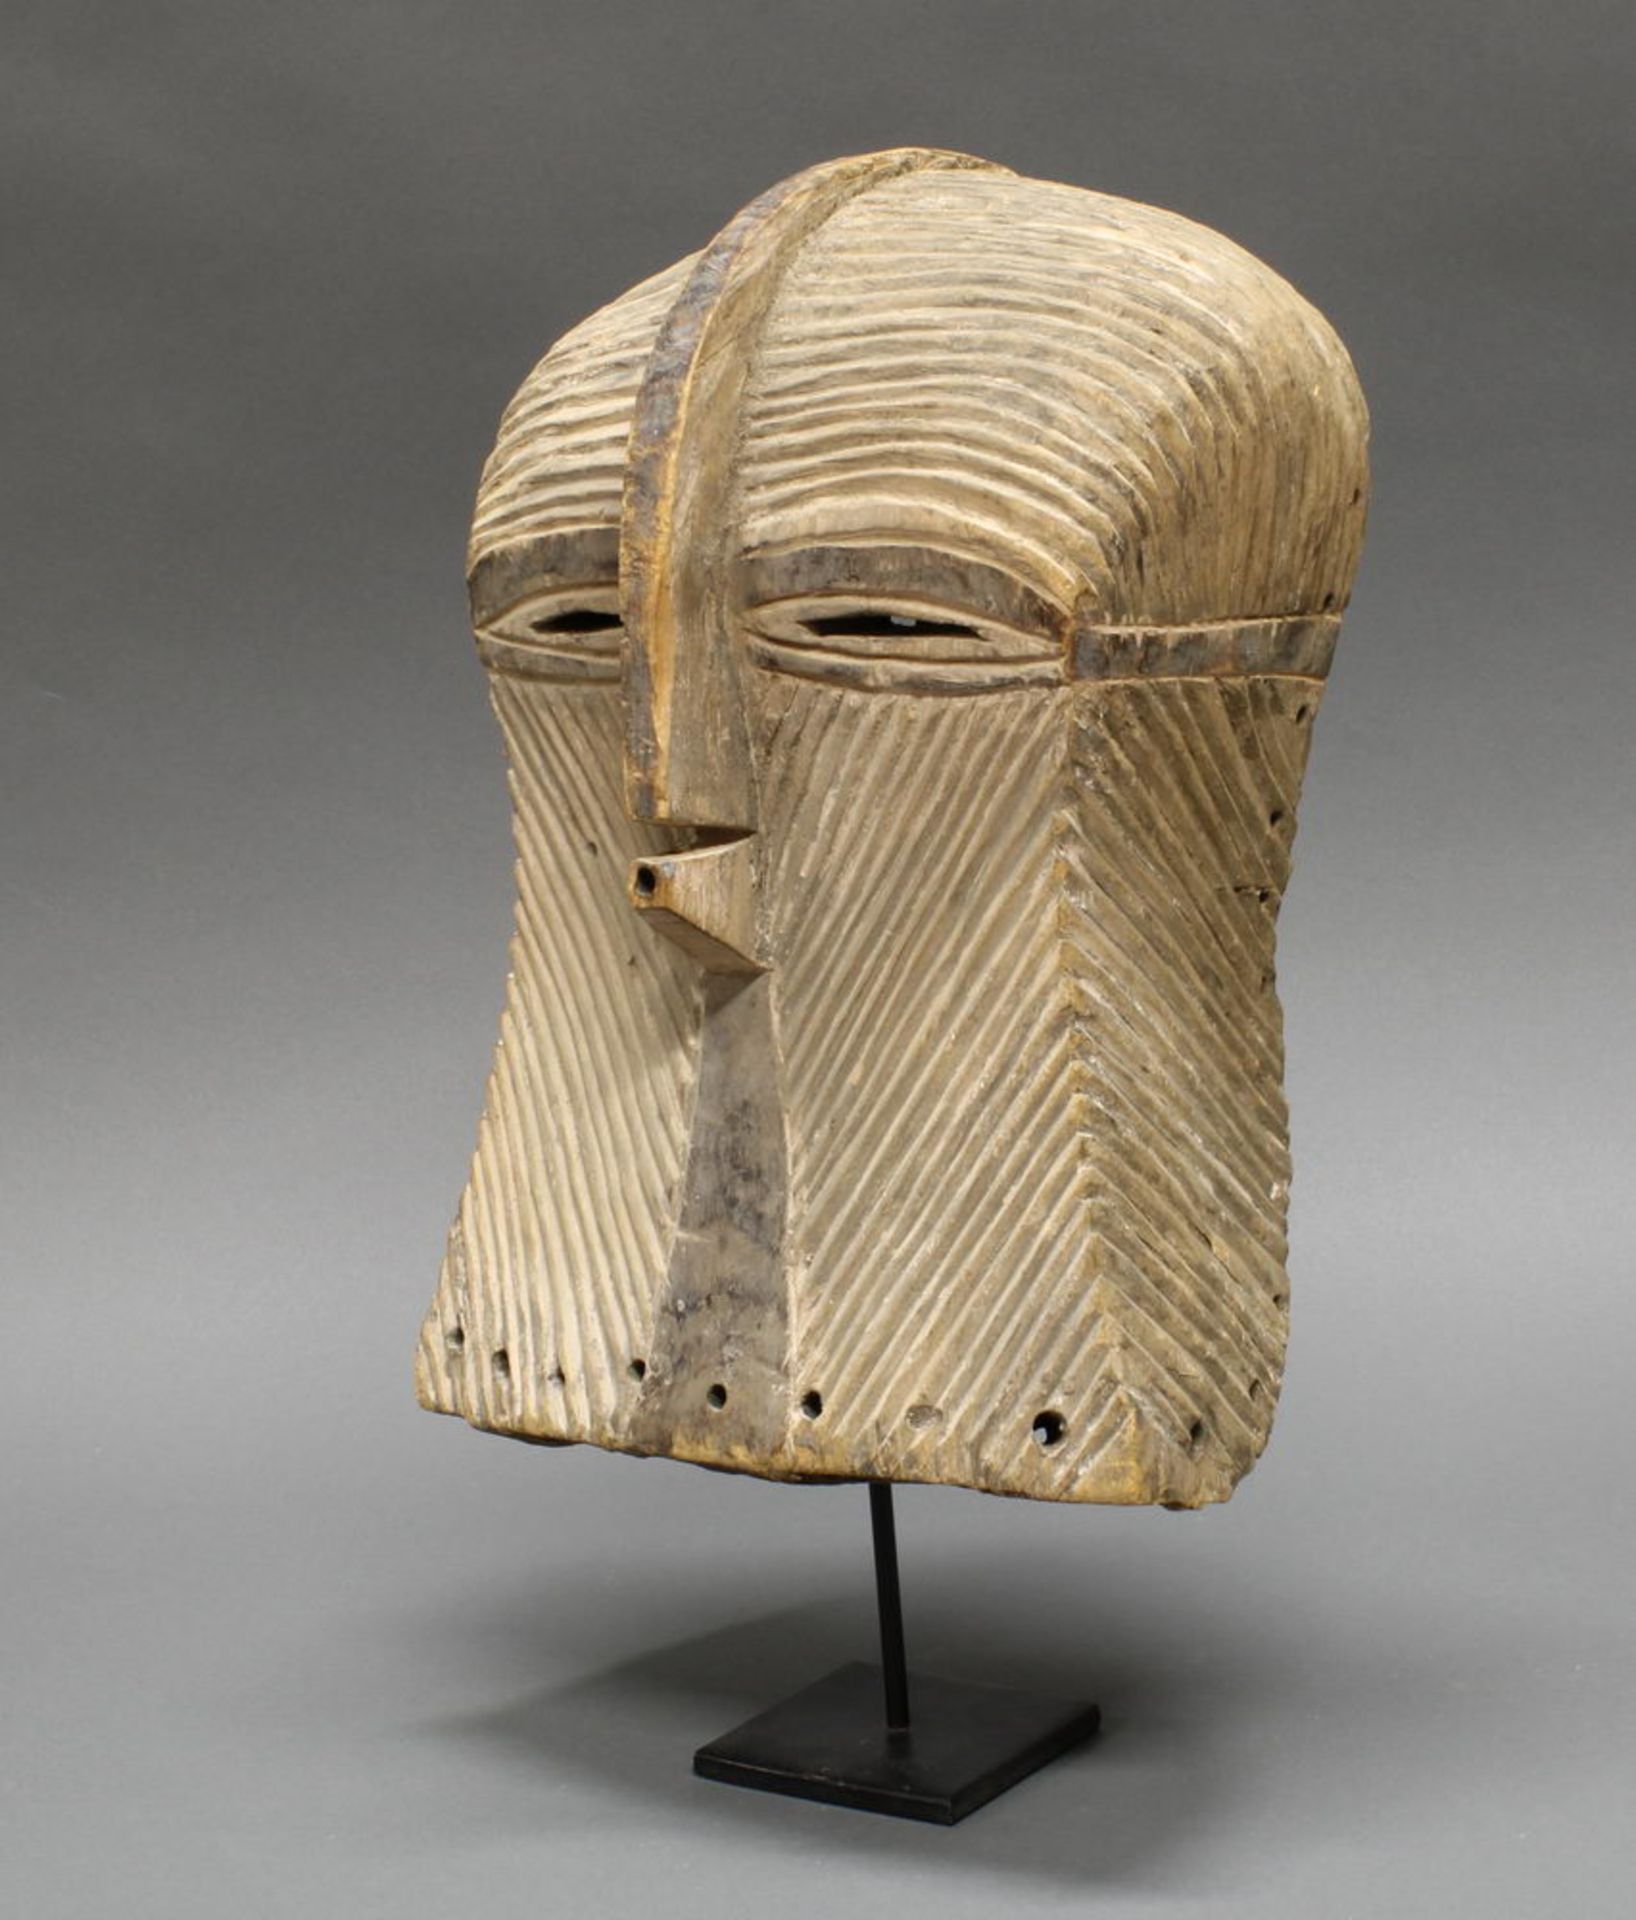 Gesichtsmaske, Songe, DR Kongo, Afrika, Holz mit linearen Schnitten, helle Patina, 34 cm hoch, Meta